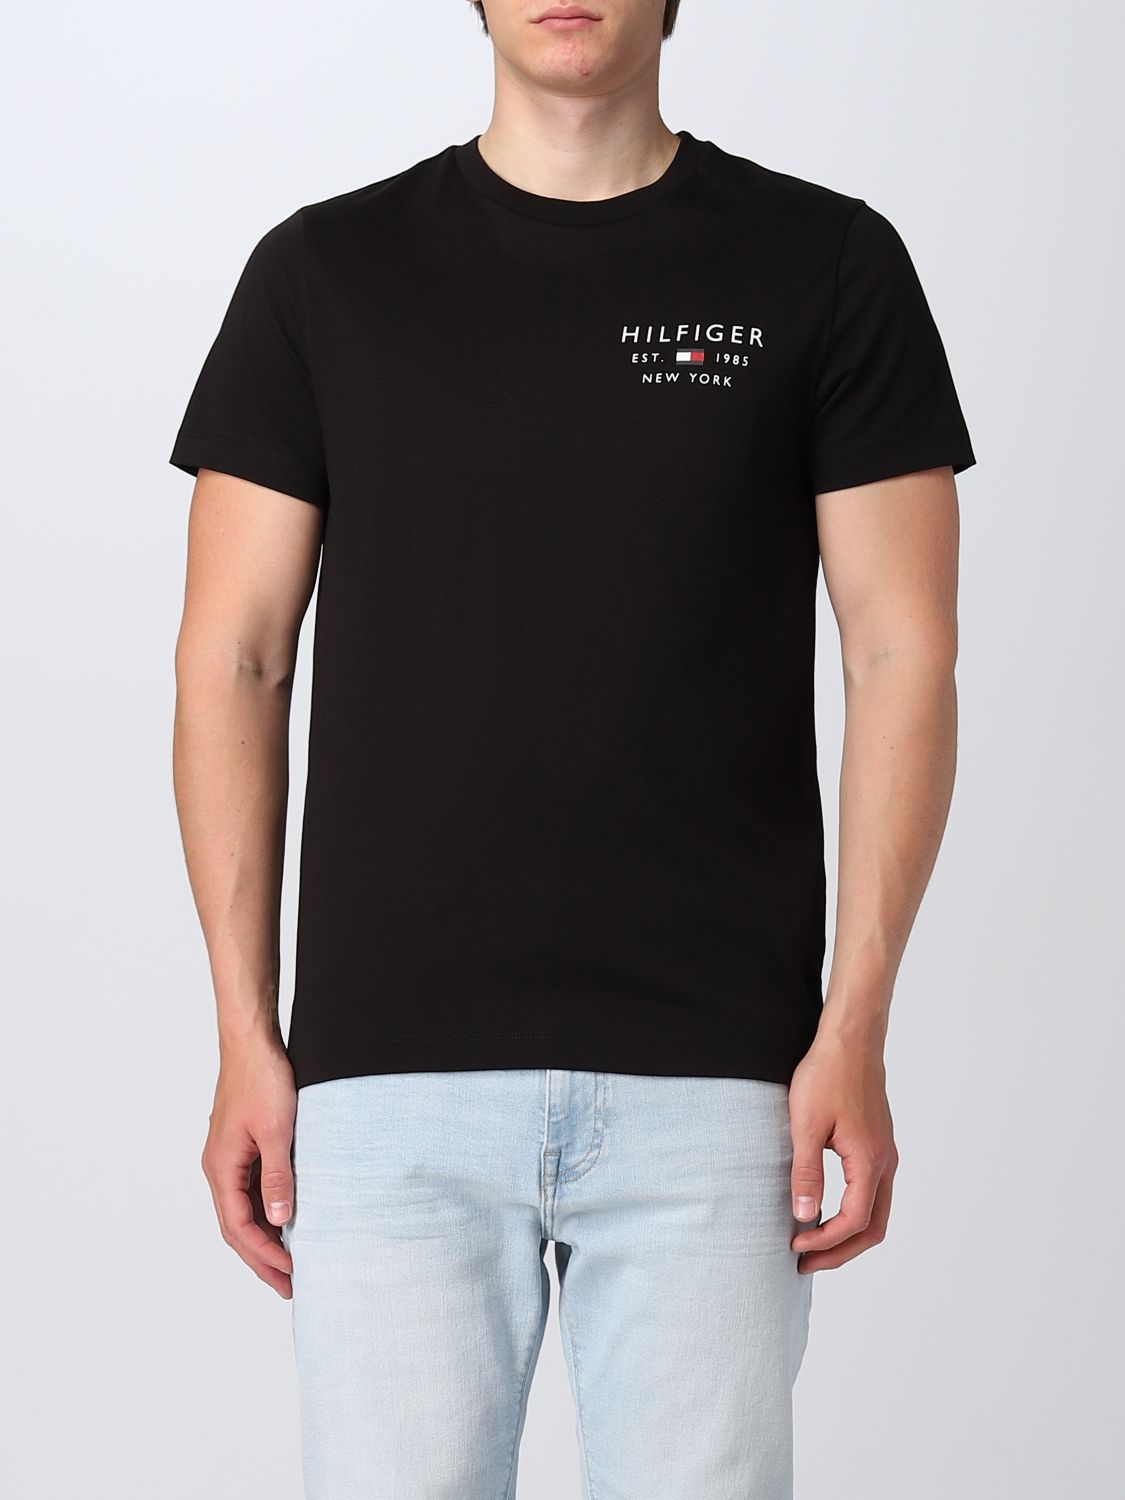 TOMMY HILFIGER: t-shirt for man - Black | Tommy Hilfiger t-shirt ...